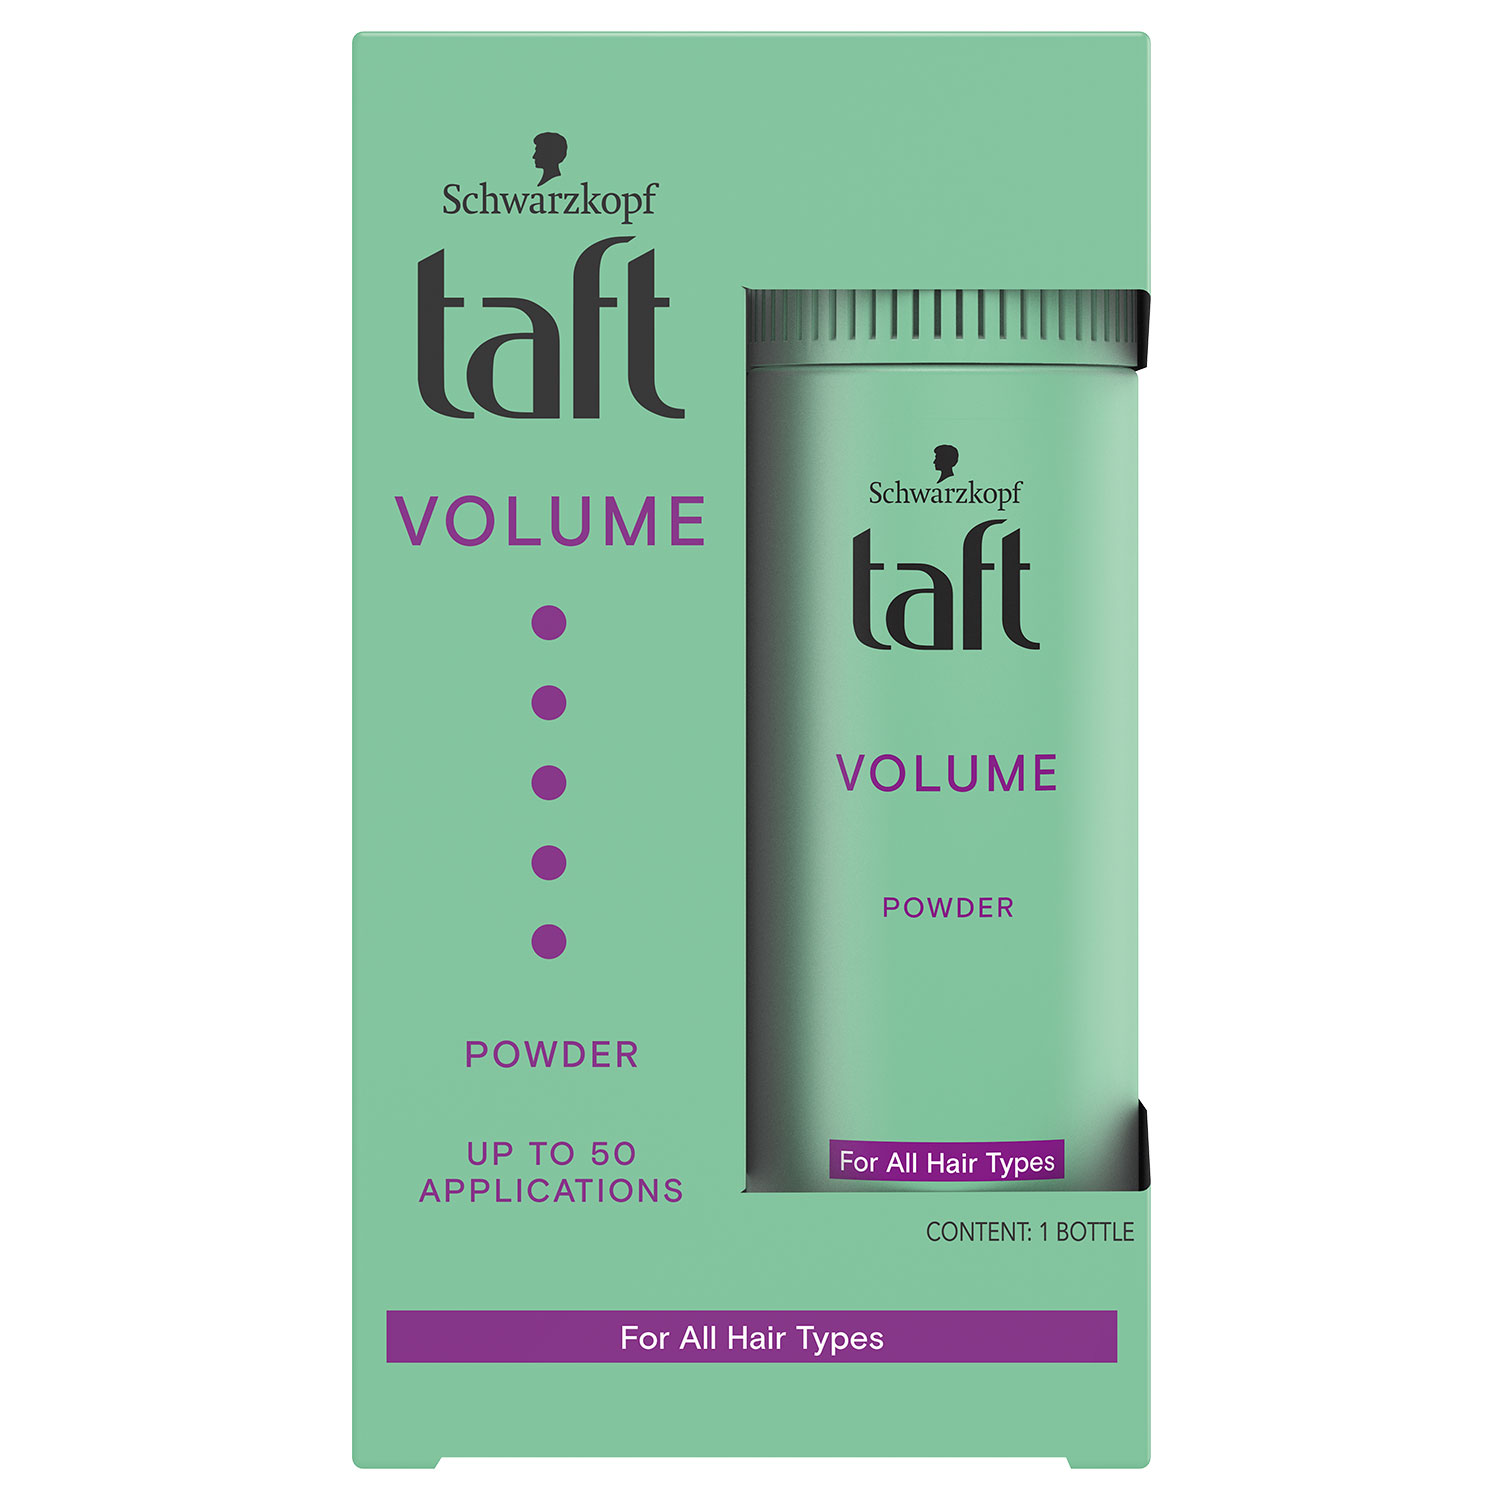 Powder Taft Volume for hair 10g